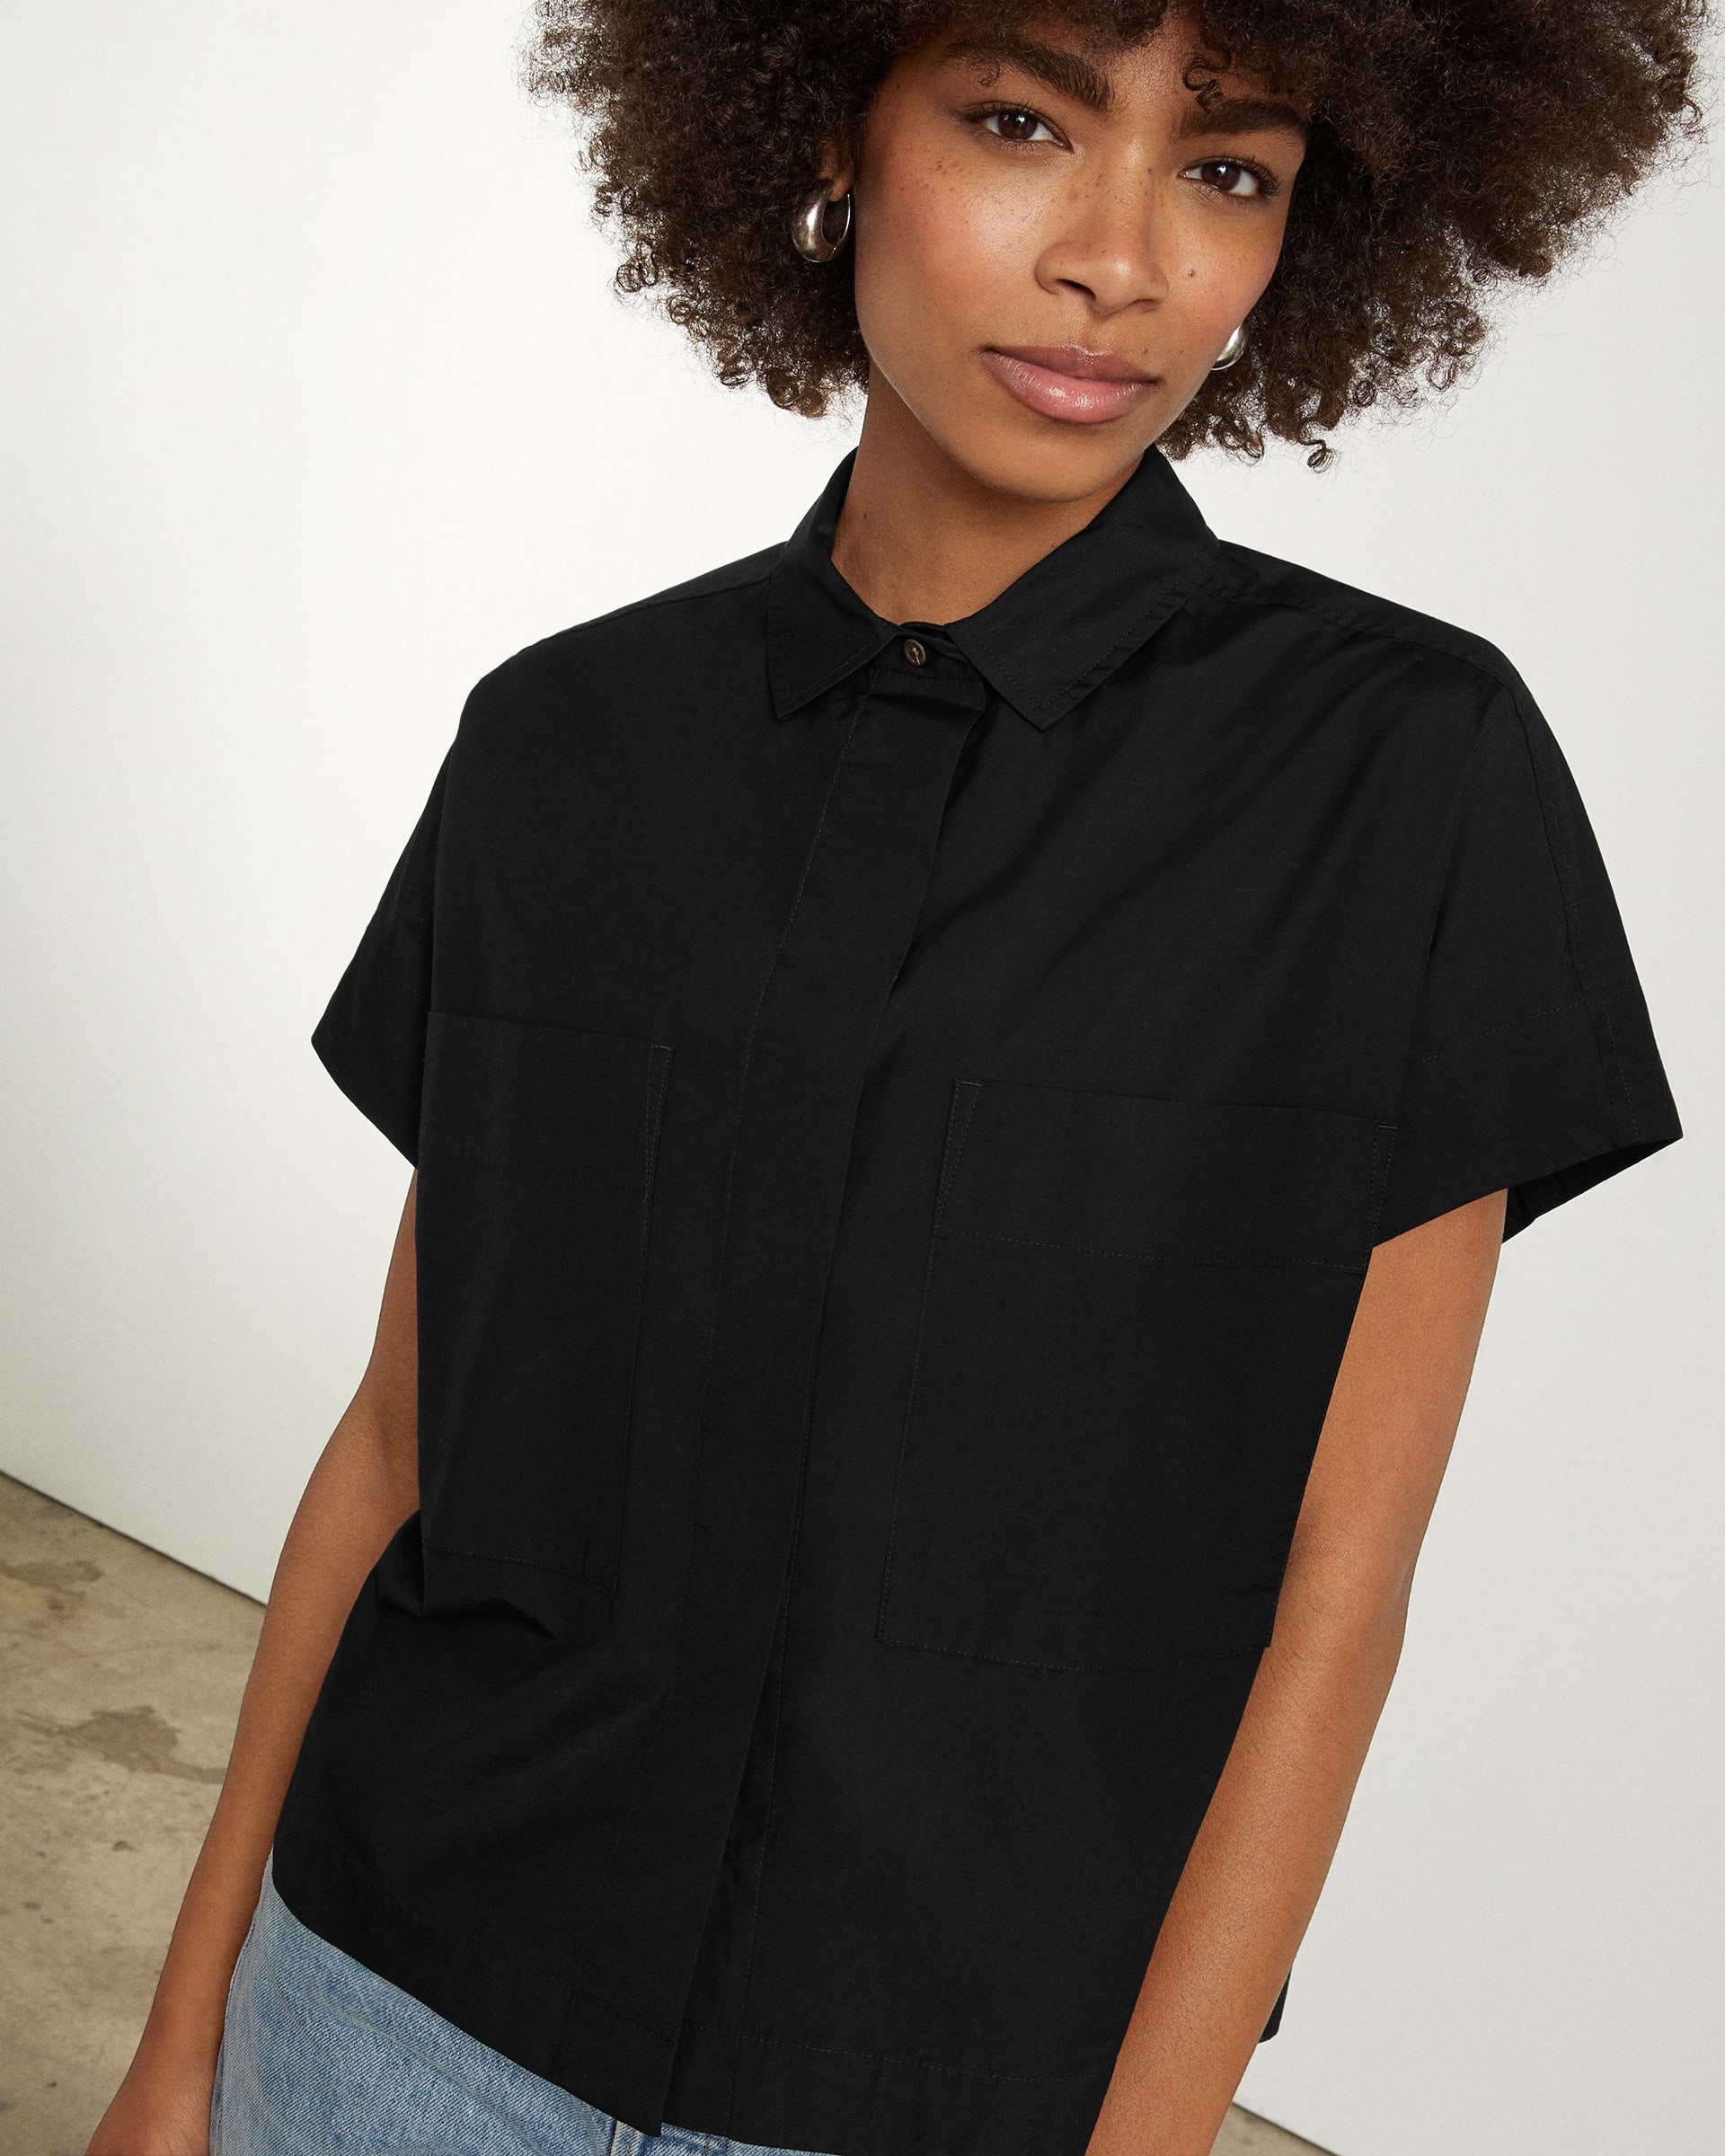 The Short-Sleeve Box Shirt Black – Everlane